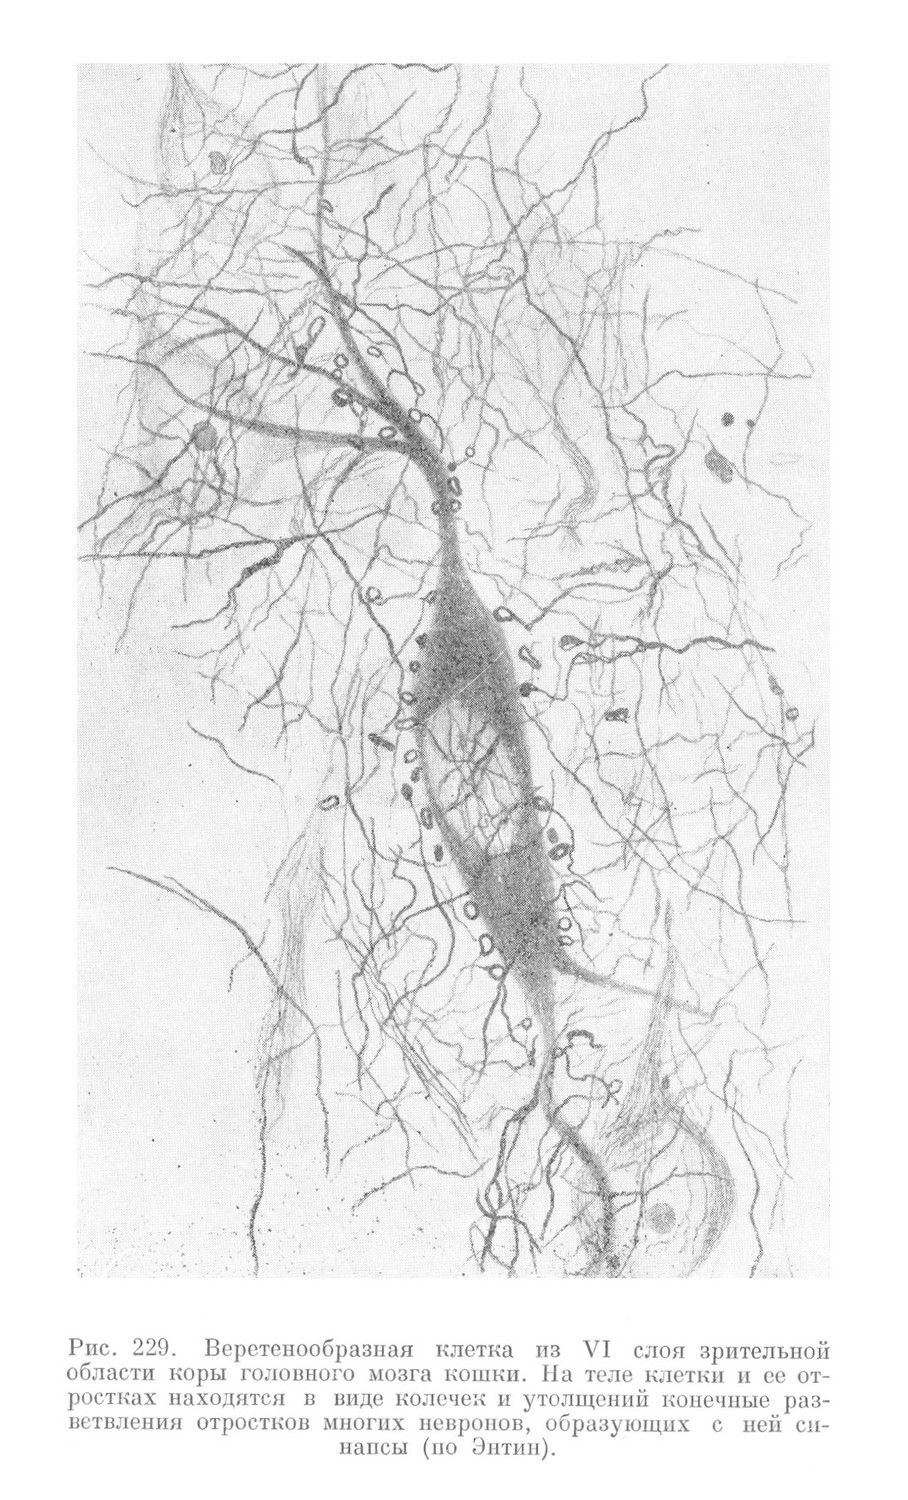 Веретенообразная клетка из VI слоя зрительной области коры головного мозга кошки. На теле клетки и ее отростках находятся в виде колечек и утолщений конечные разветвления отростков многих невронов, образующих с ней синапсы (по Энтин).